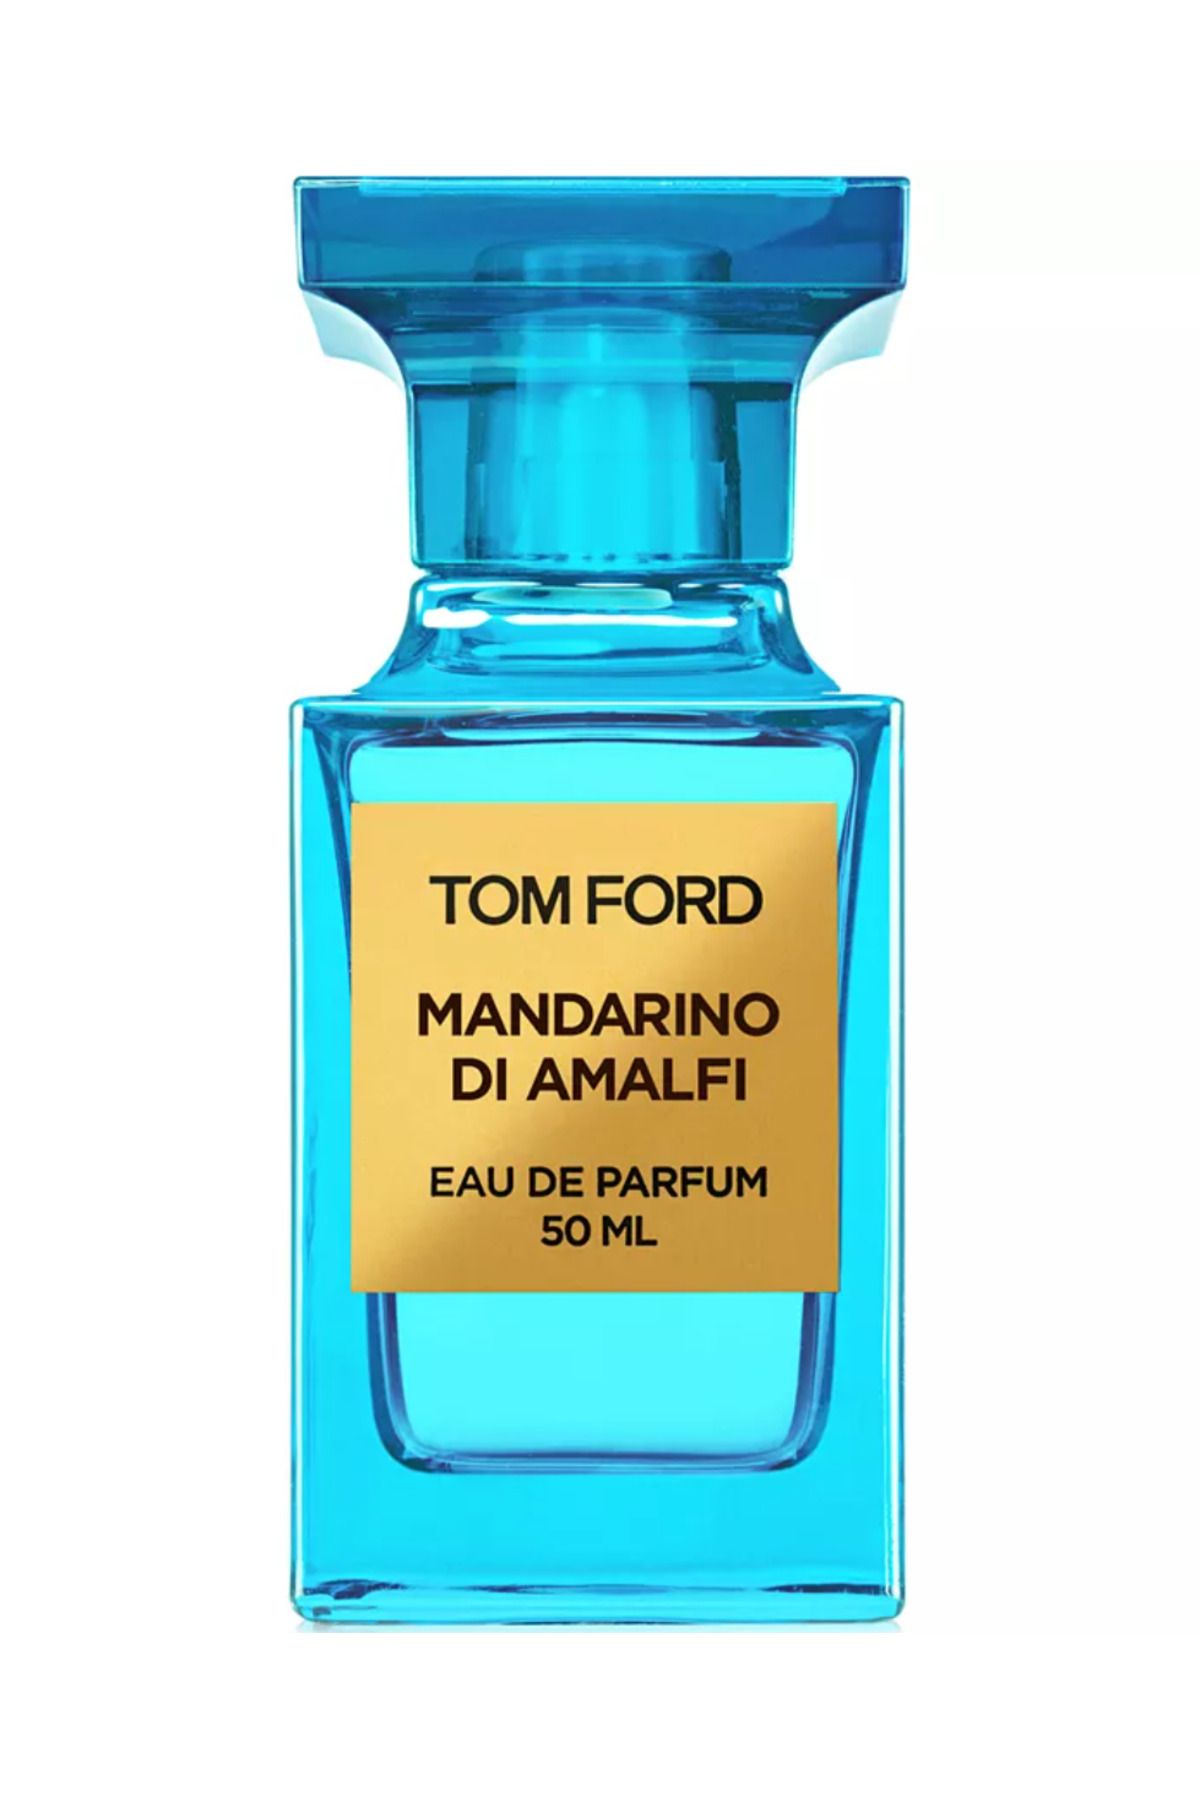 Tom Ford Mandarino Di Amalfi Eau de Parfum Spray 50 Ml   7290475734908234729137